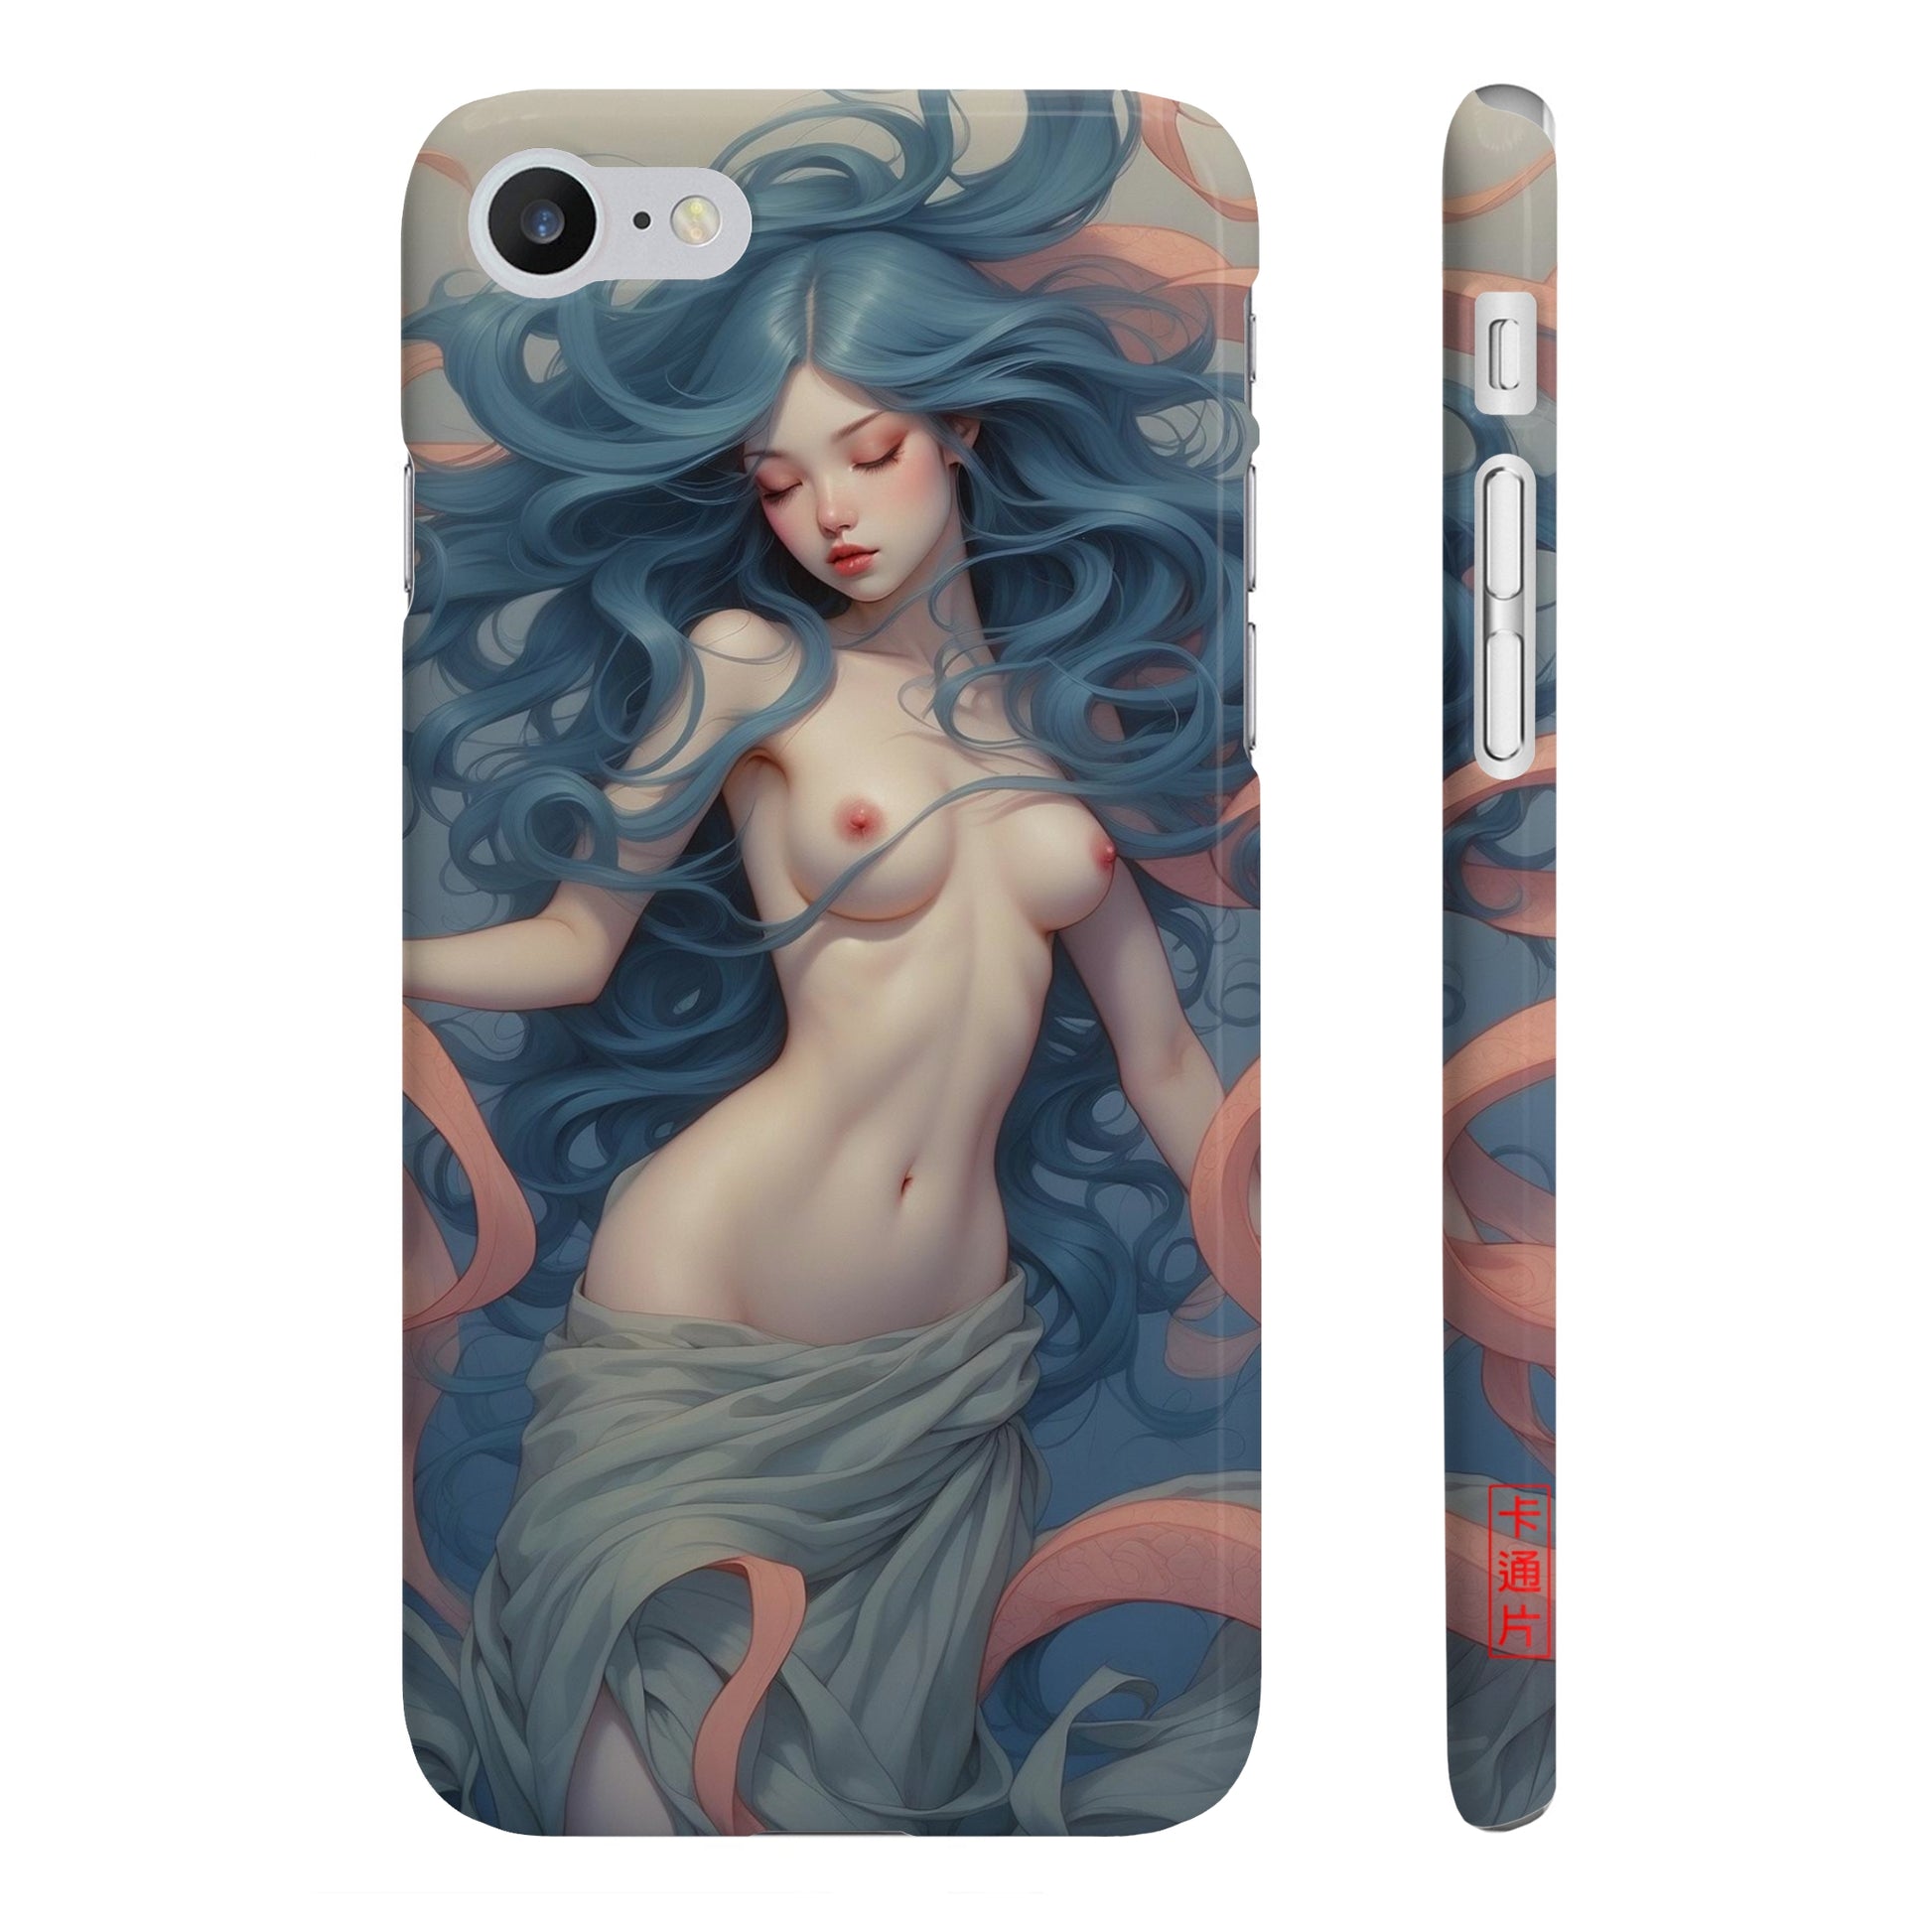 Kǎtōng Piàn - Mermaid Collection - 057 - Slim Phone Cases Printify